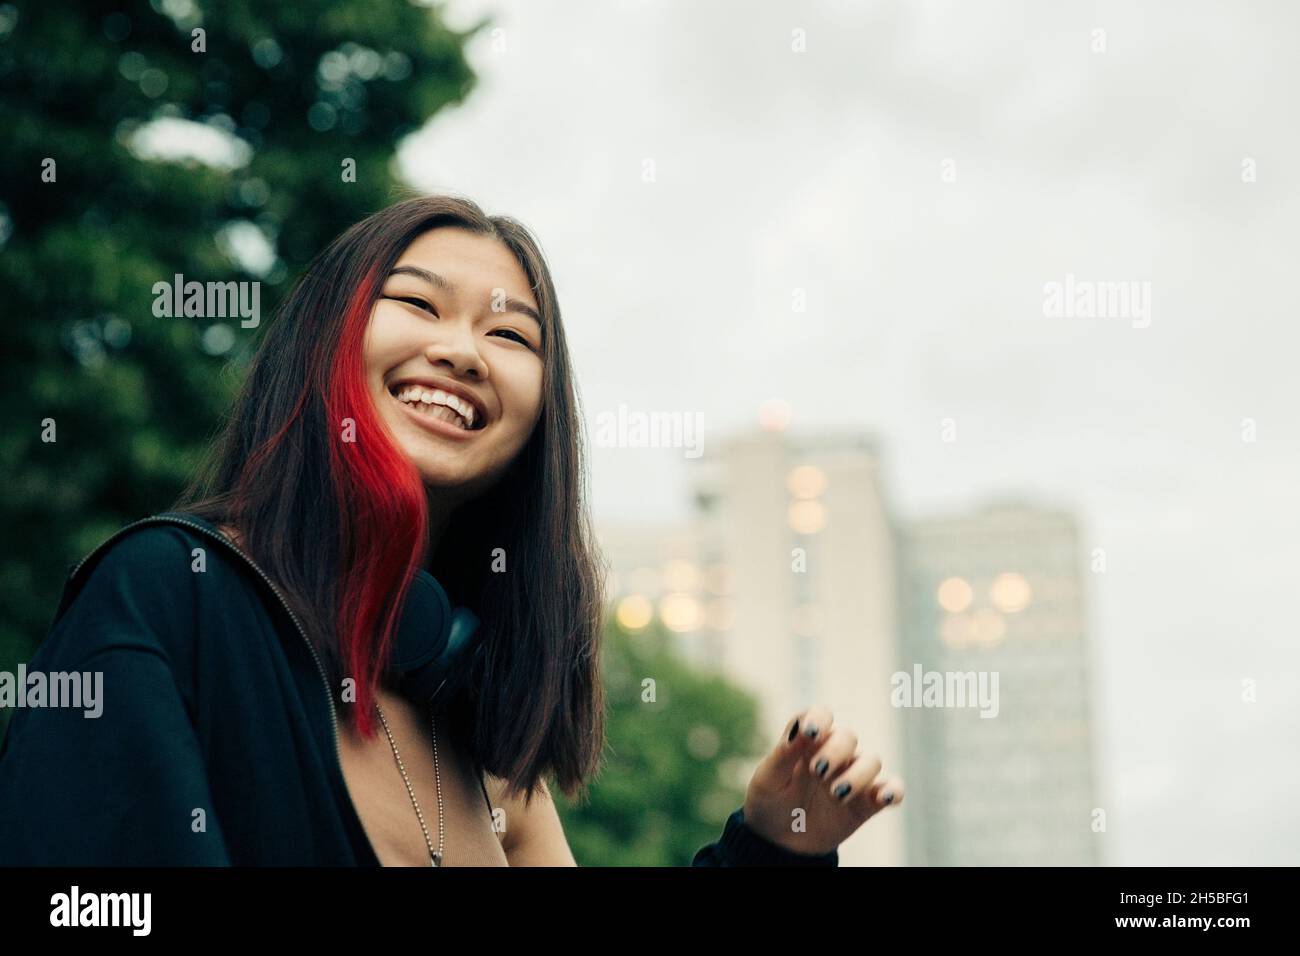 Glückliches Teenager-Mädchen mit rot hervorgehobenen Haaren Stockfoto